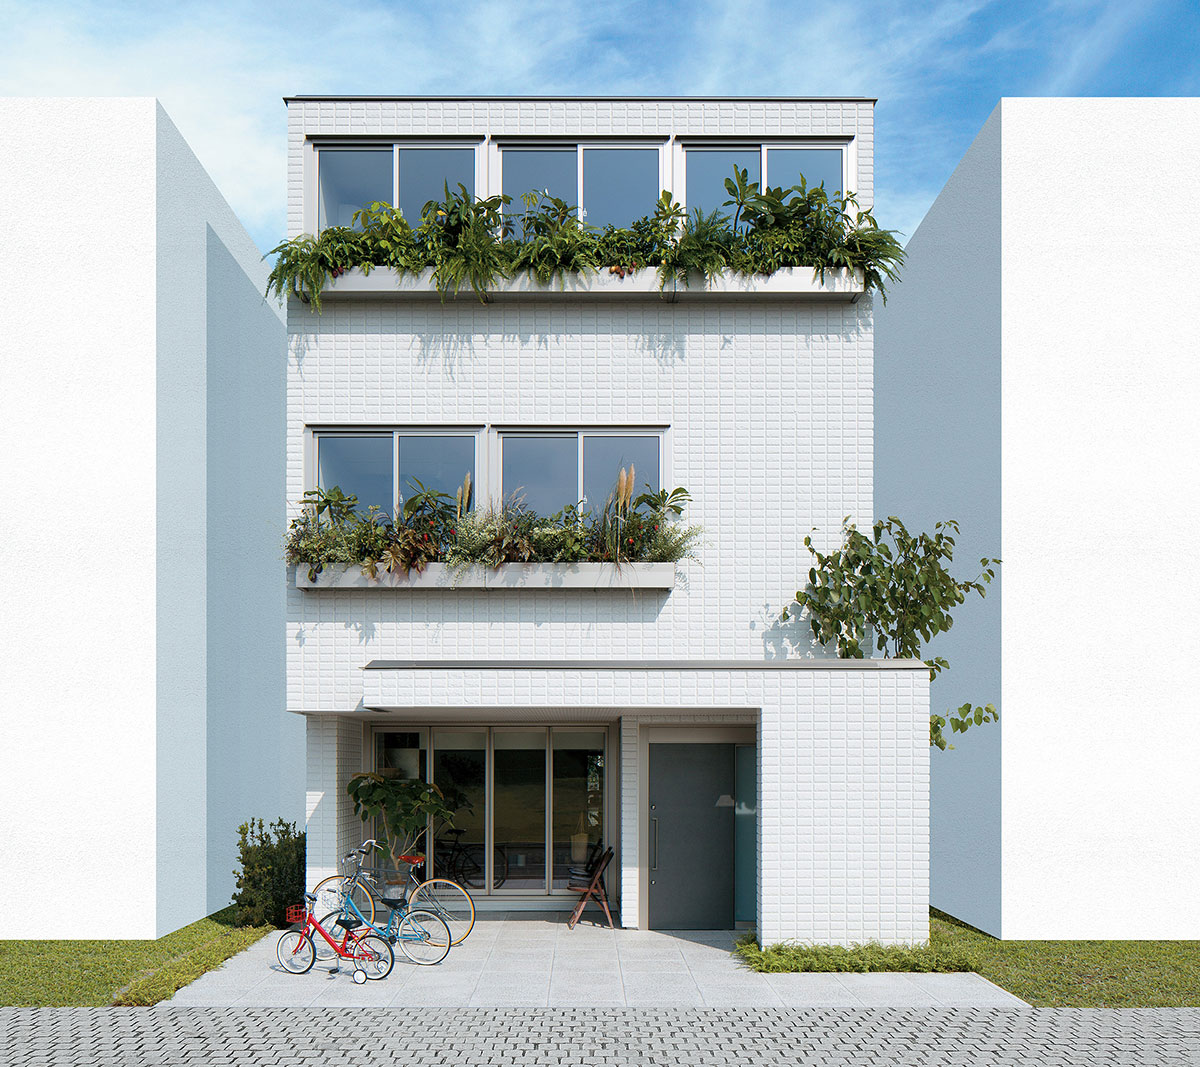 ヘーベルハウスLONGLIFE IS BEAUTIFUL 3階建て住宅の空間づくり